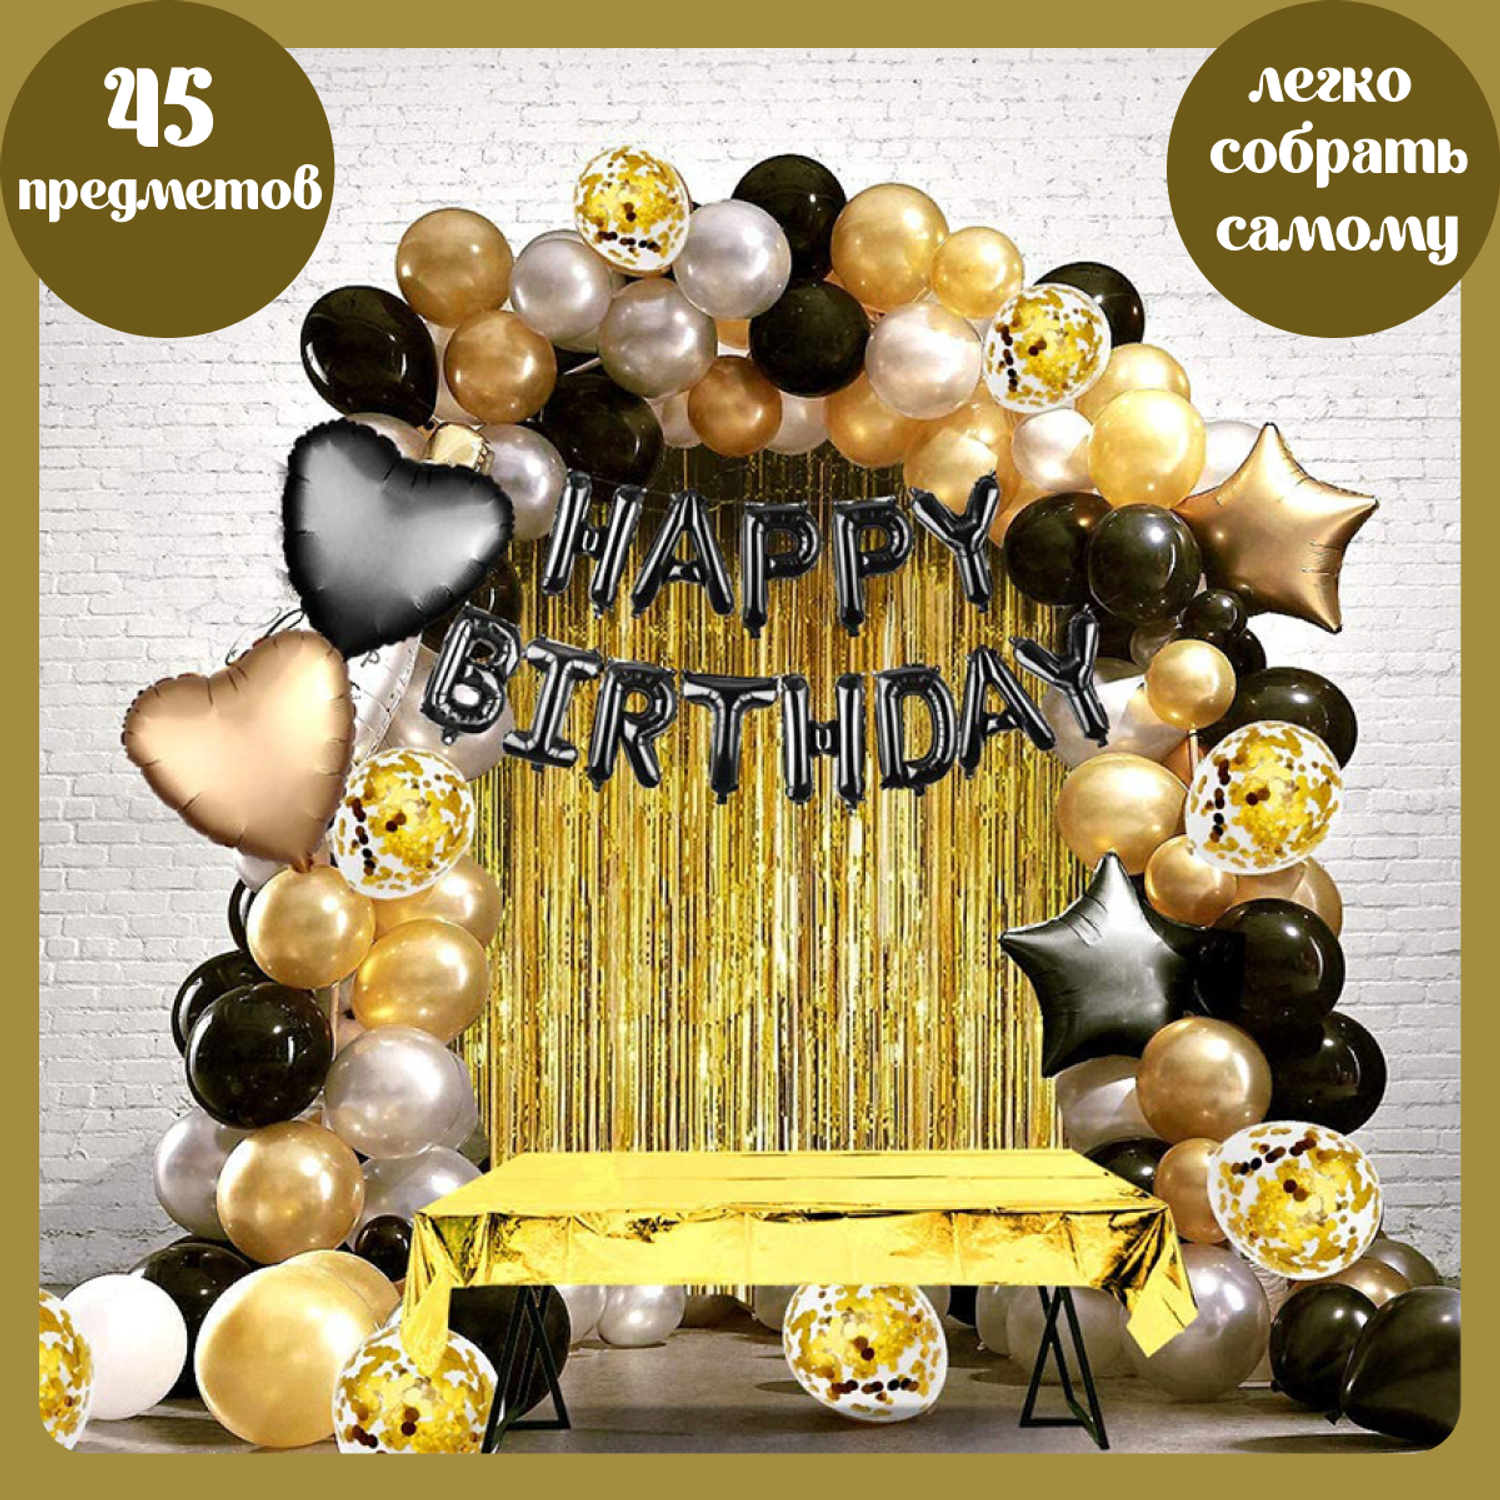 Воздушные шары набор Мишины шарики для фотозоны на день рождения с фольгированными буквами Happy Birthday - фото 1